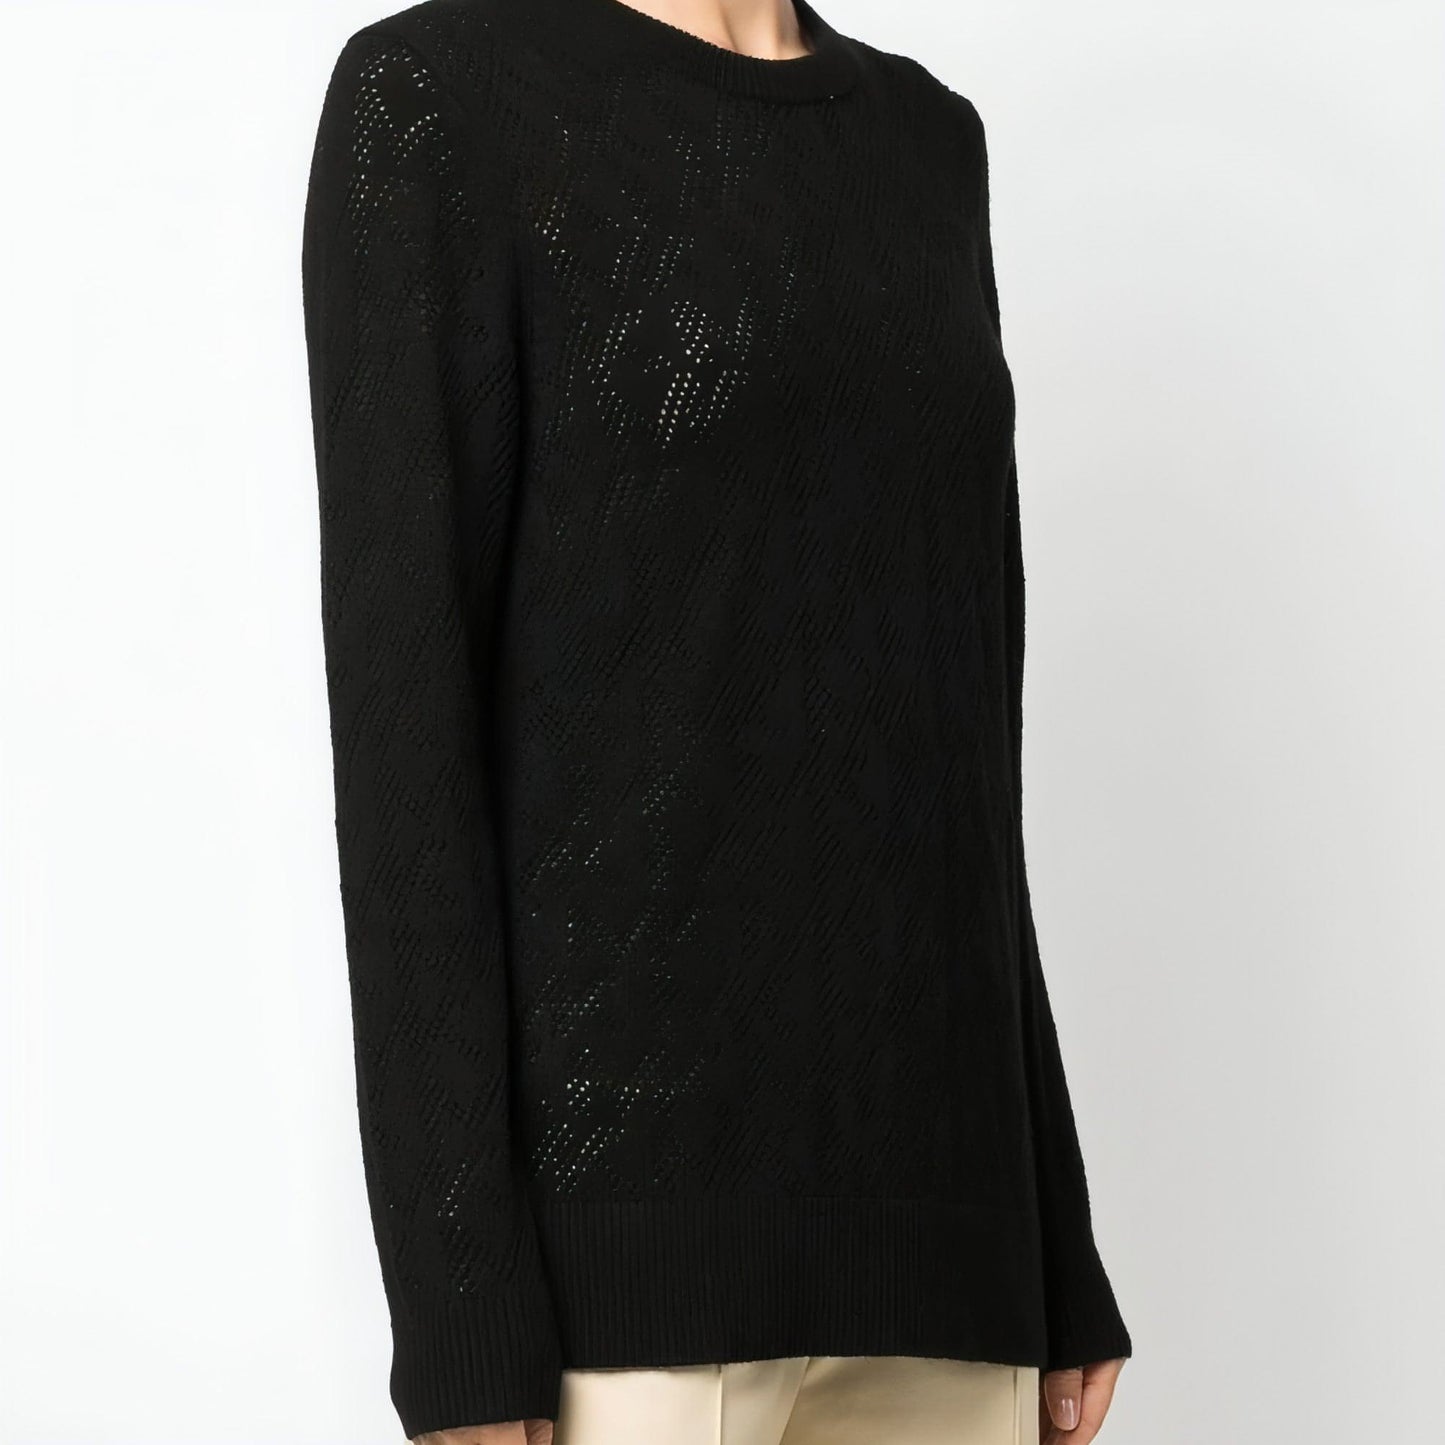 MICHAEL KORS moteriškas juodas megztinis